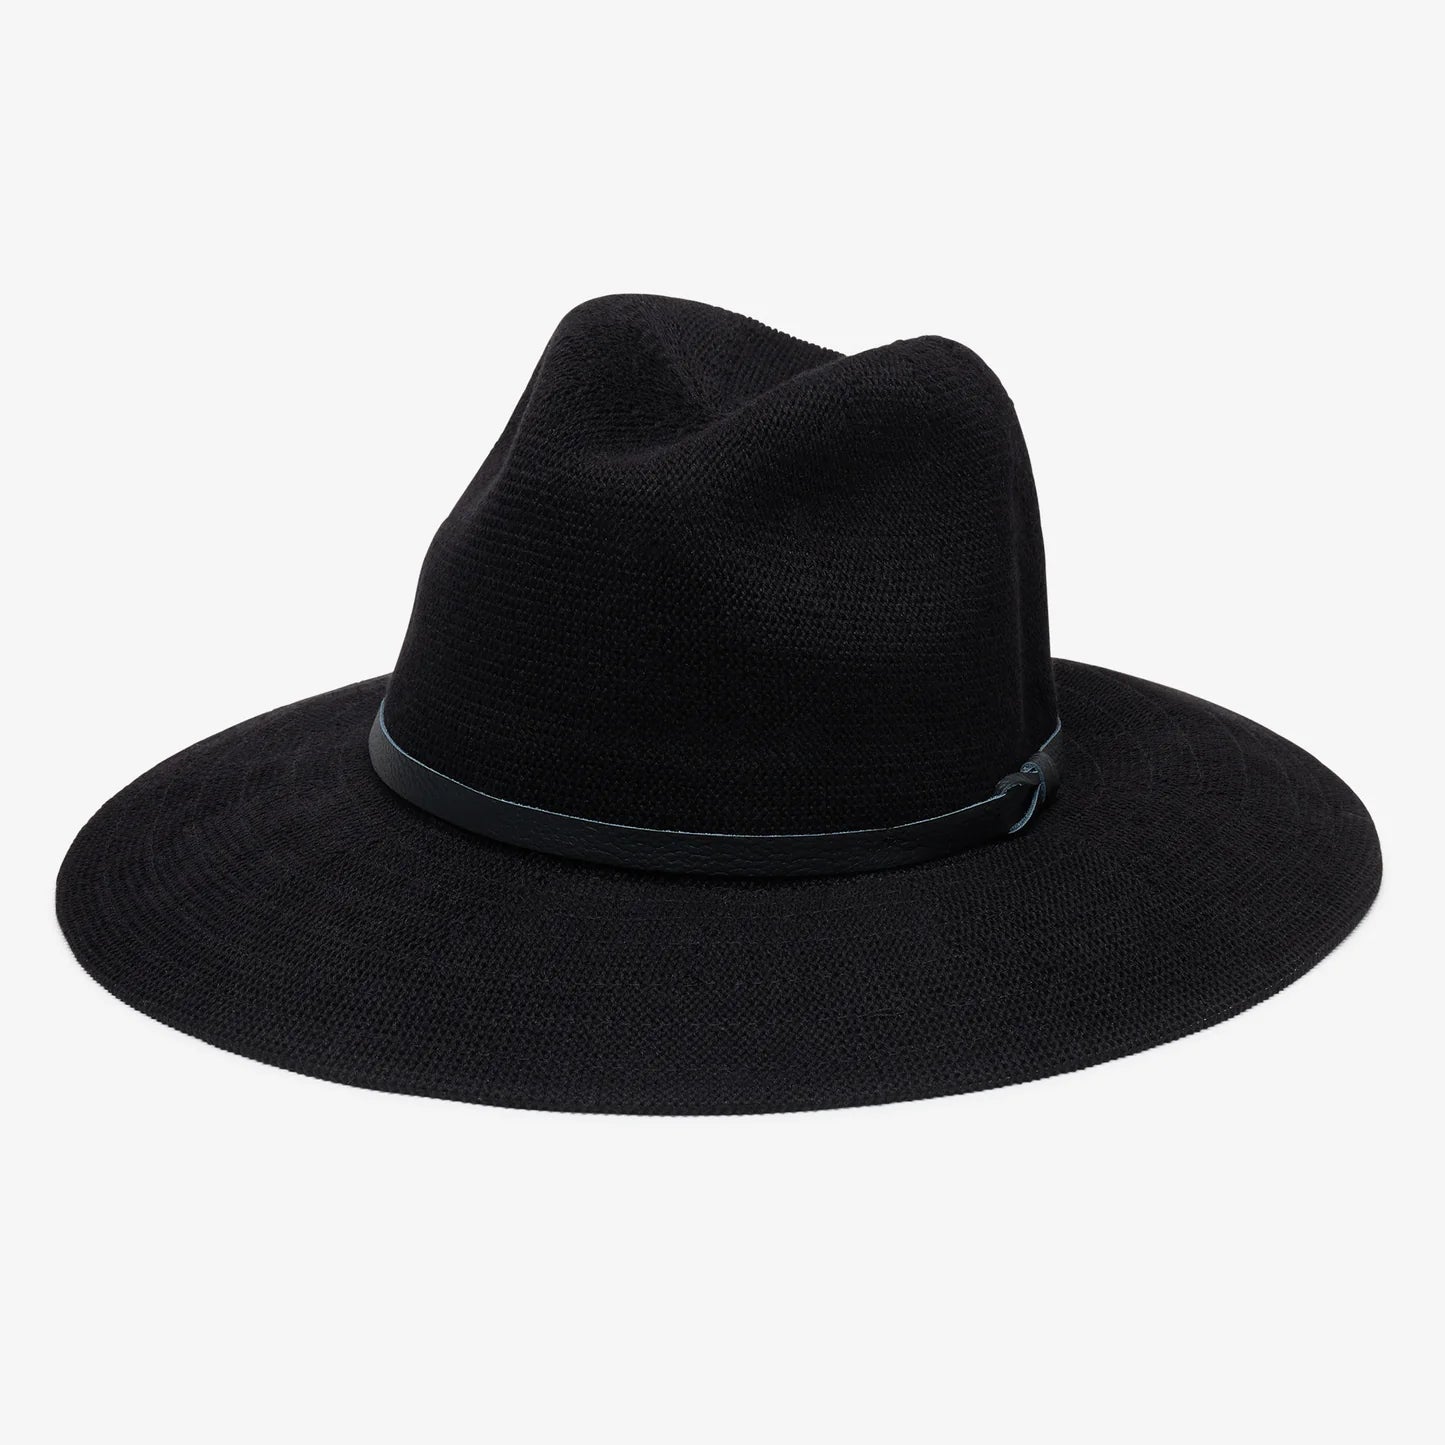 Winona Panama Hat